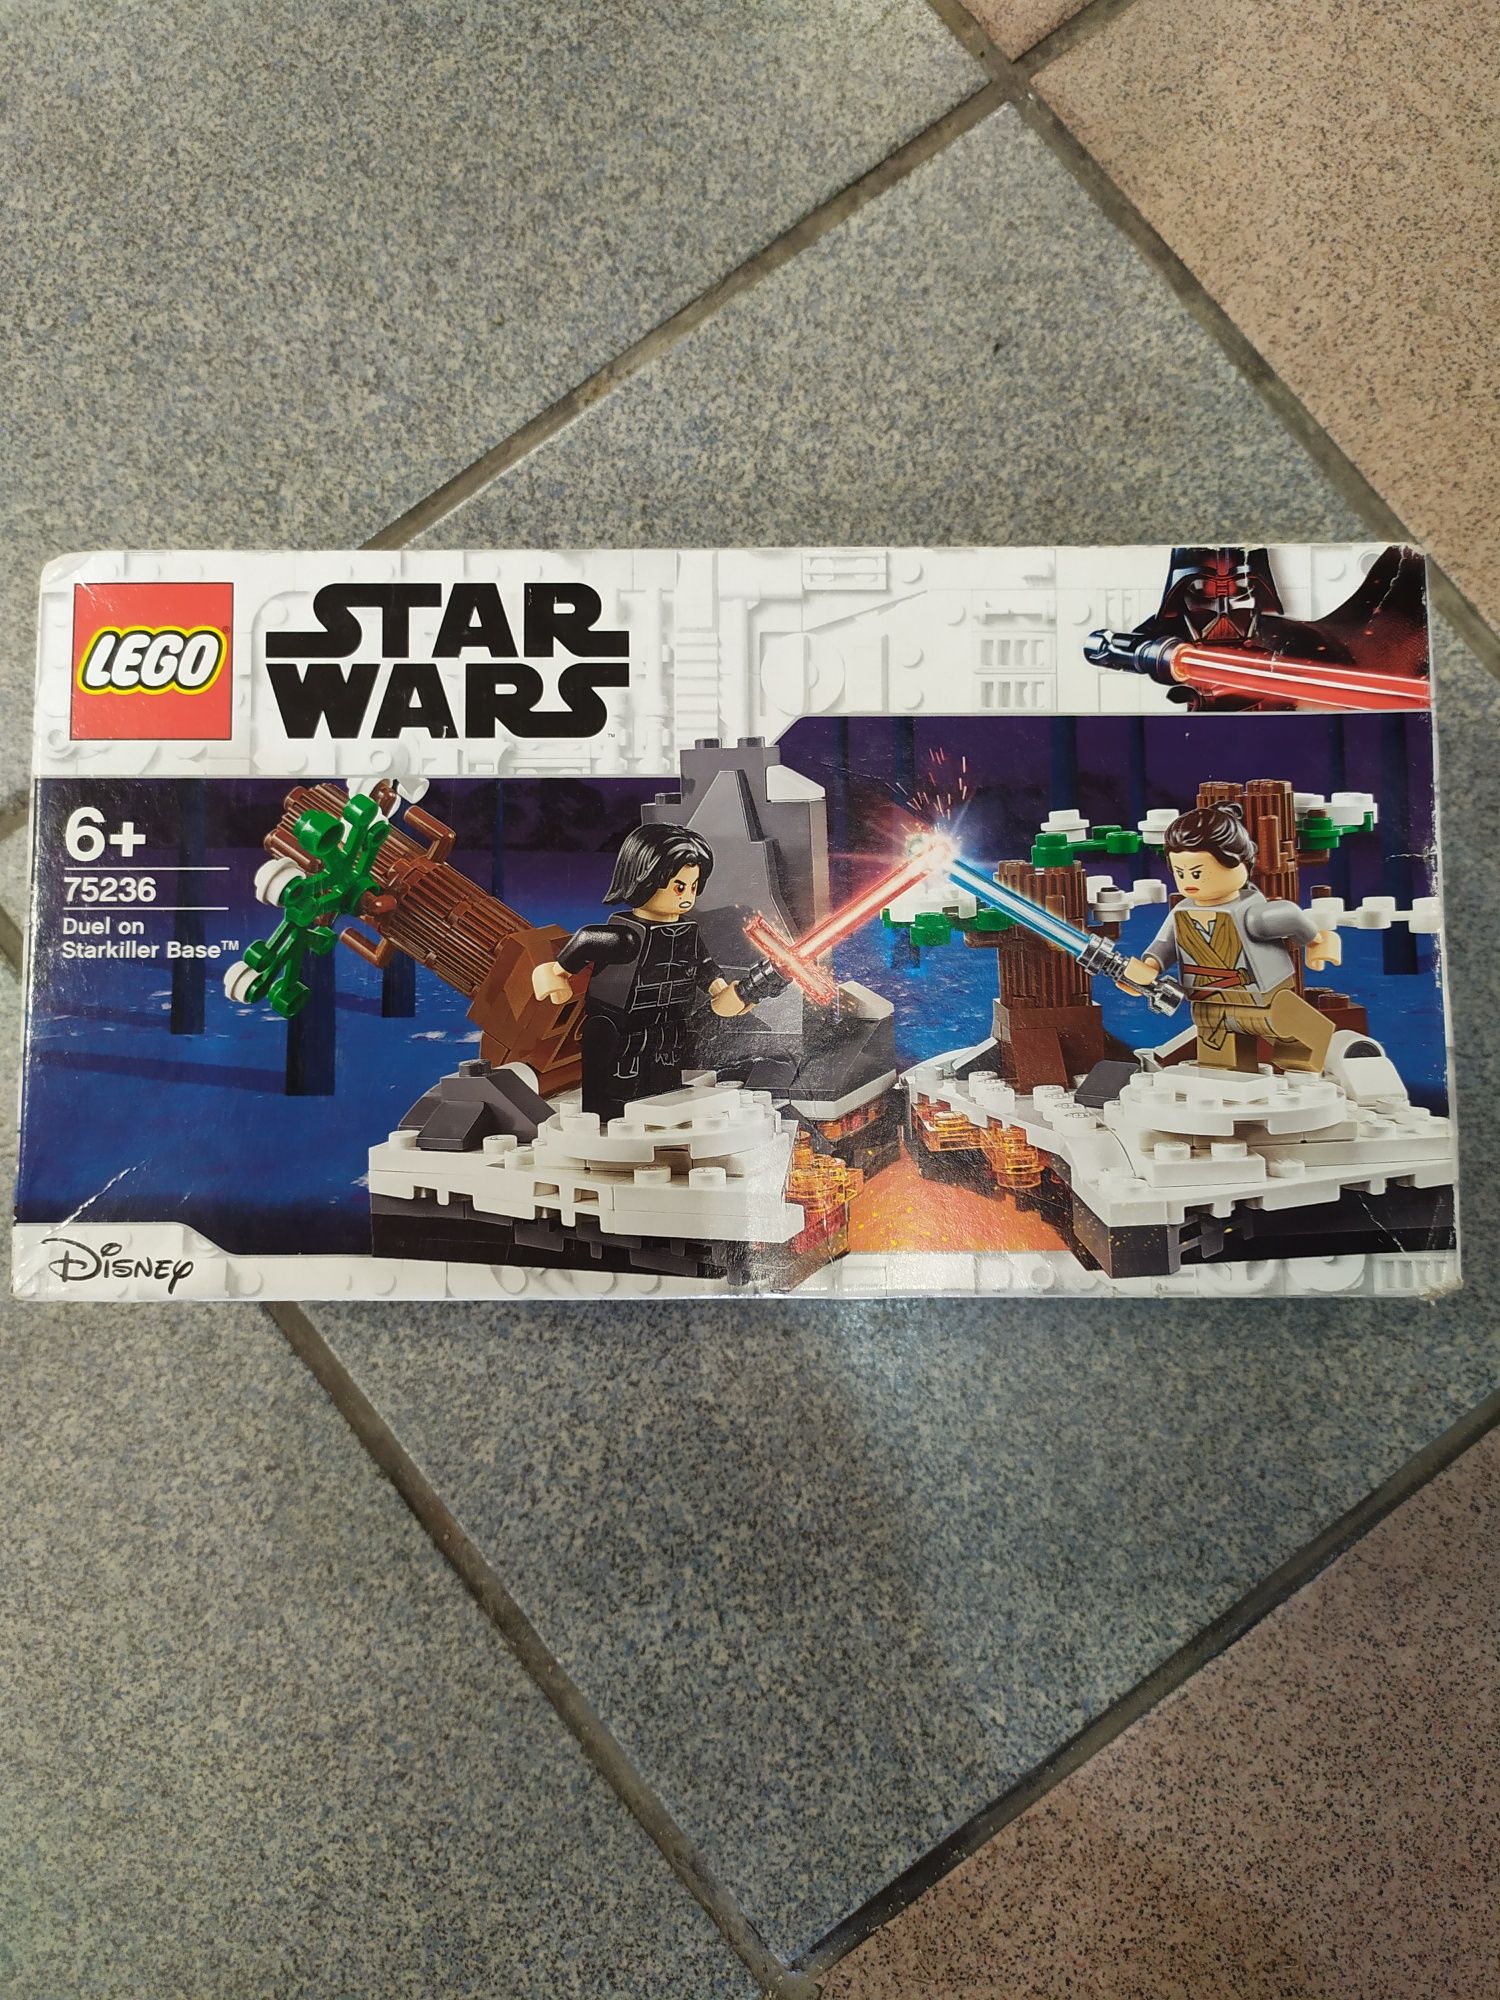 LEGO 75236 Star wars Pojedynek w bazie Starkiller wysyłka w cenie